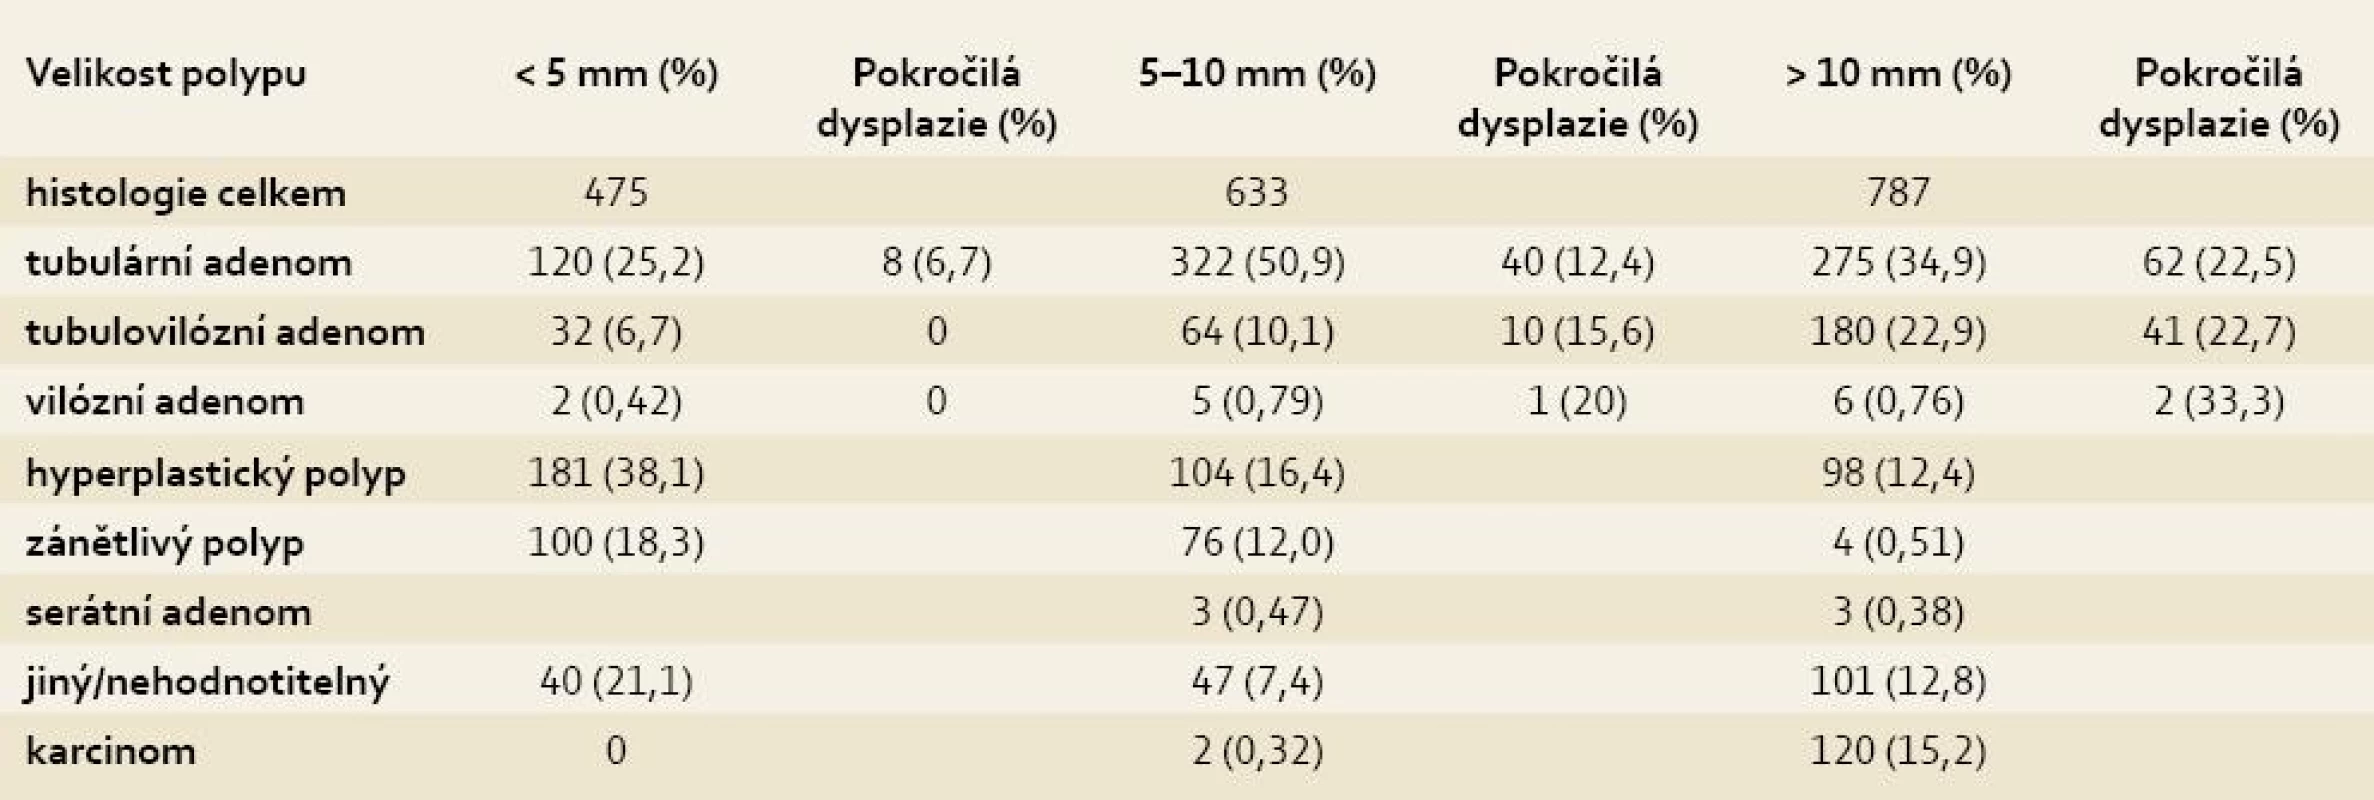 Jednotlivé histologické typy a pokročilé dysplazie v závislosti na velikosti léze.
Tab. 3. Individual histological types and advanced dysplasia by lesion size.